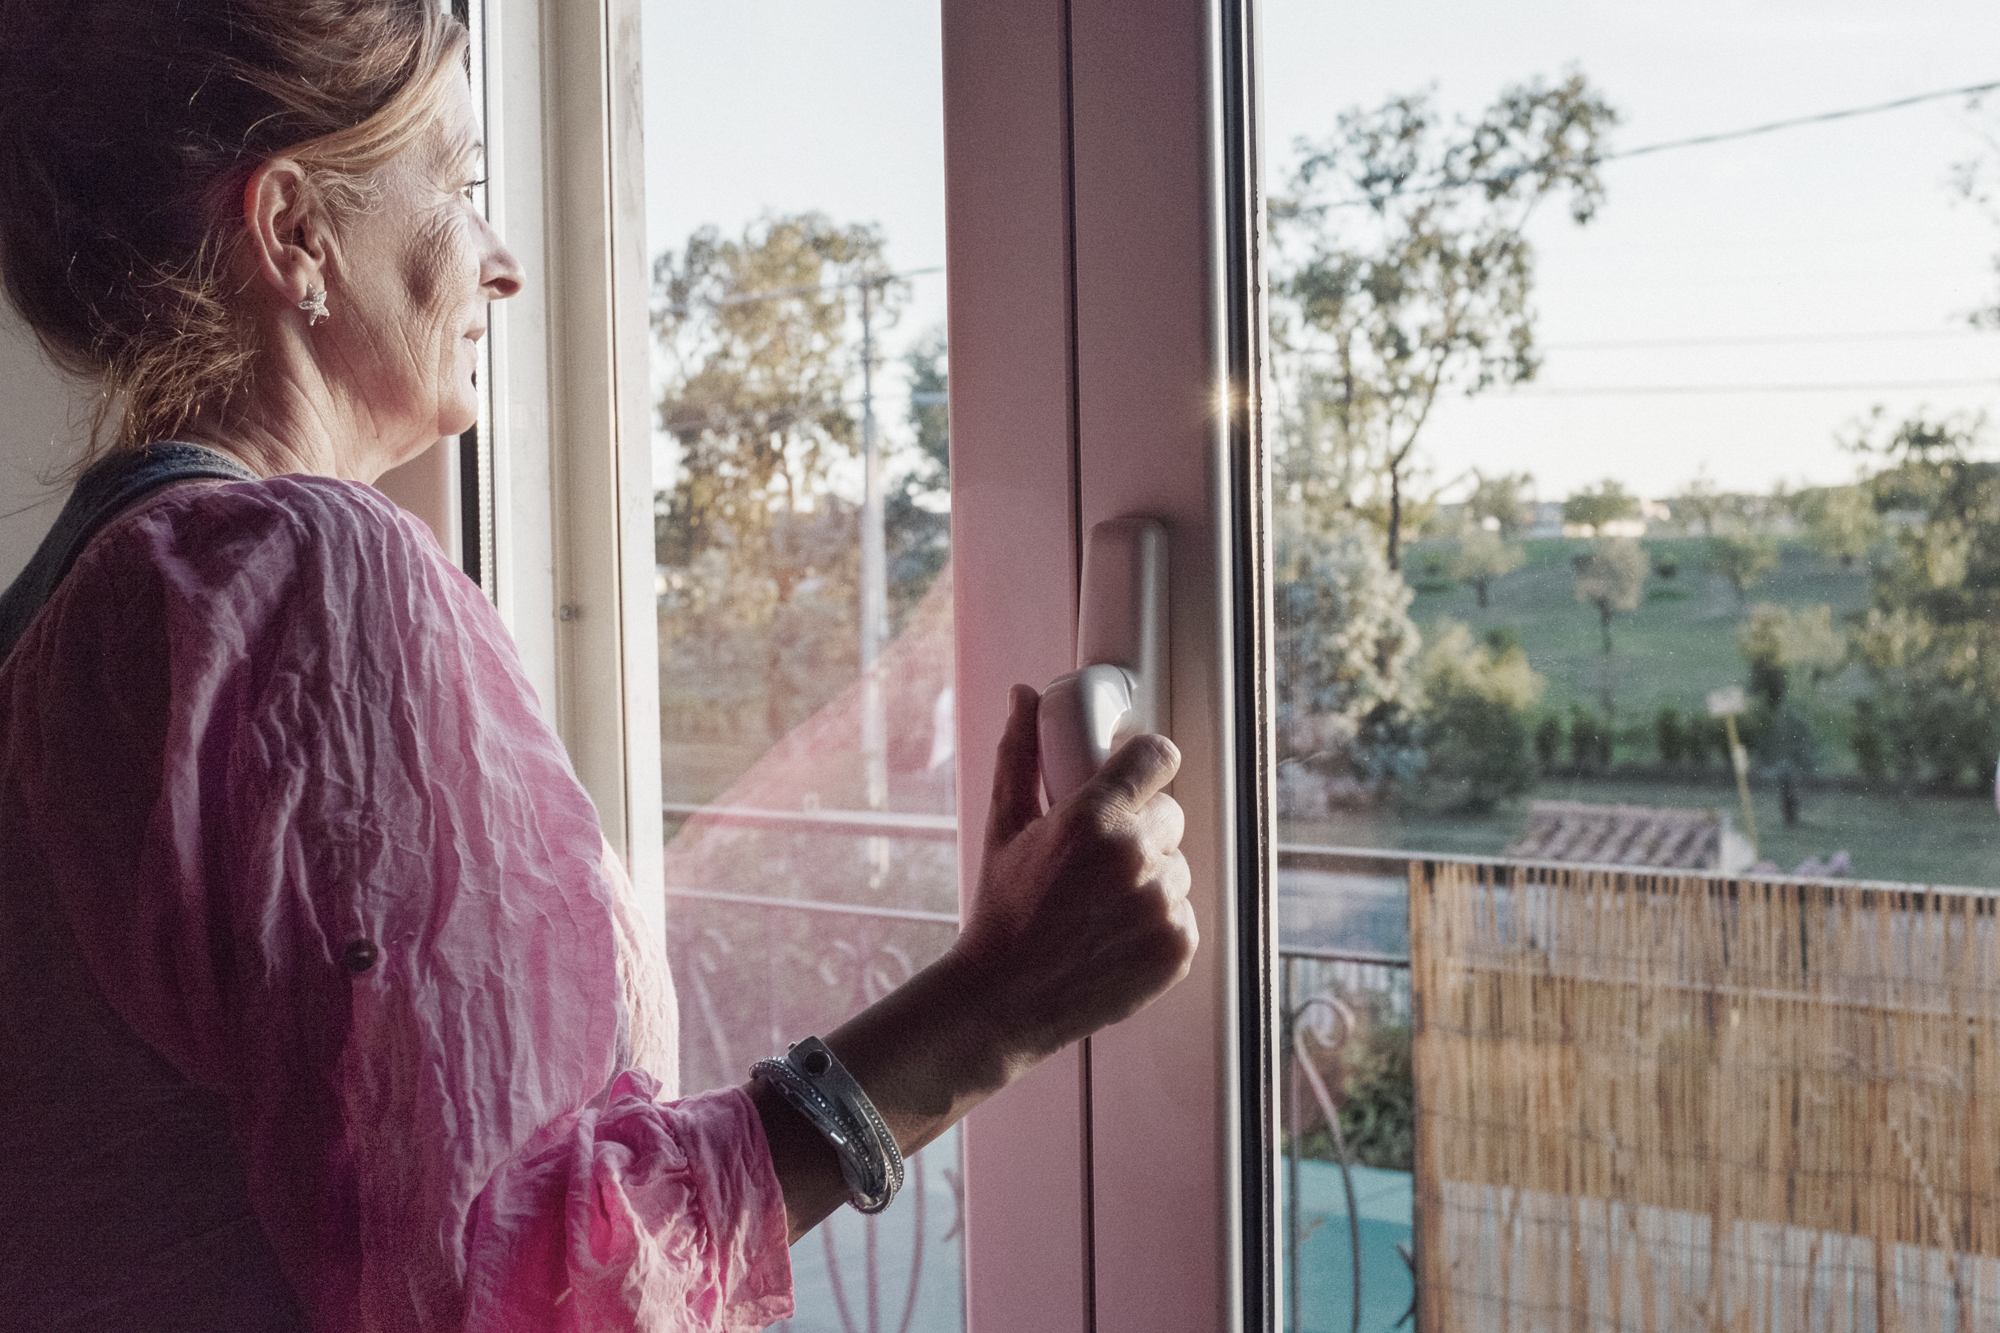  Carla Piovesan, 56 anni, nella sua abitazione di fronte alla discarica di Borgo Montello (LT), 2015.  Carla abita qui da quando è nata ed è sempre costretta a serrare tutte le finestre per bloccare i miasmi causati dalla discarica. Il bacino di racc